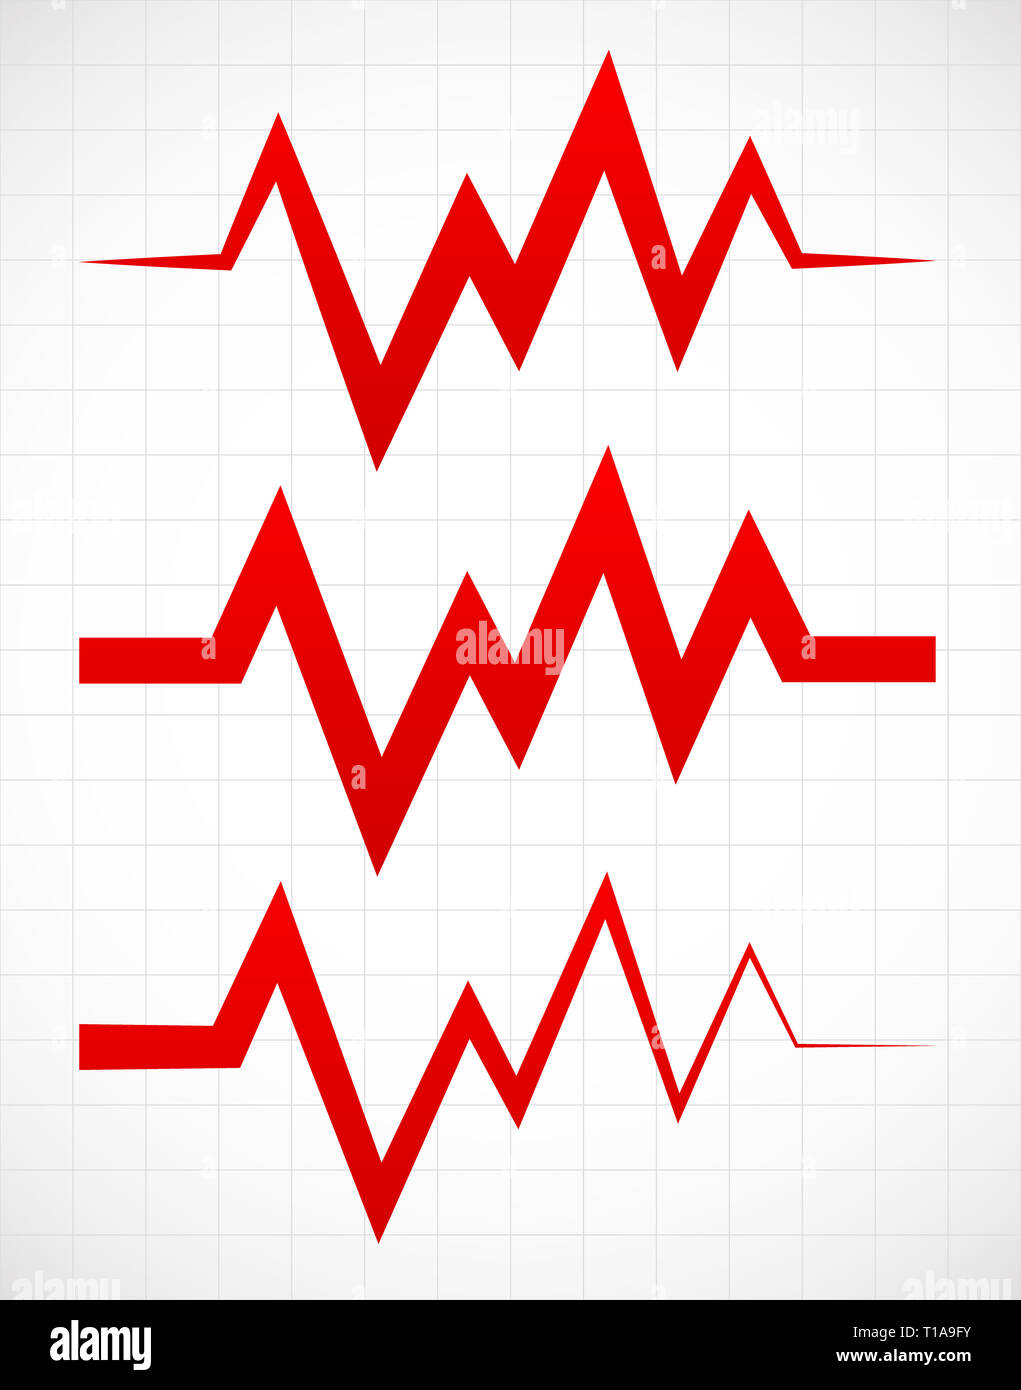 Irregular pulsating or ECG lines over gridded background Stock Photo